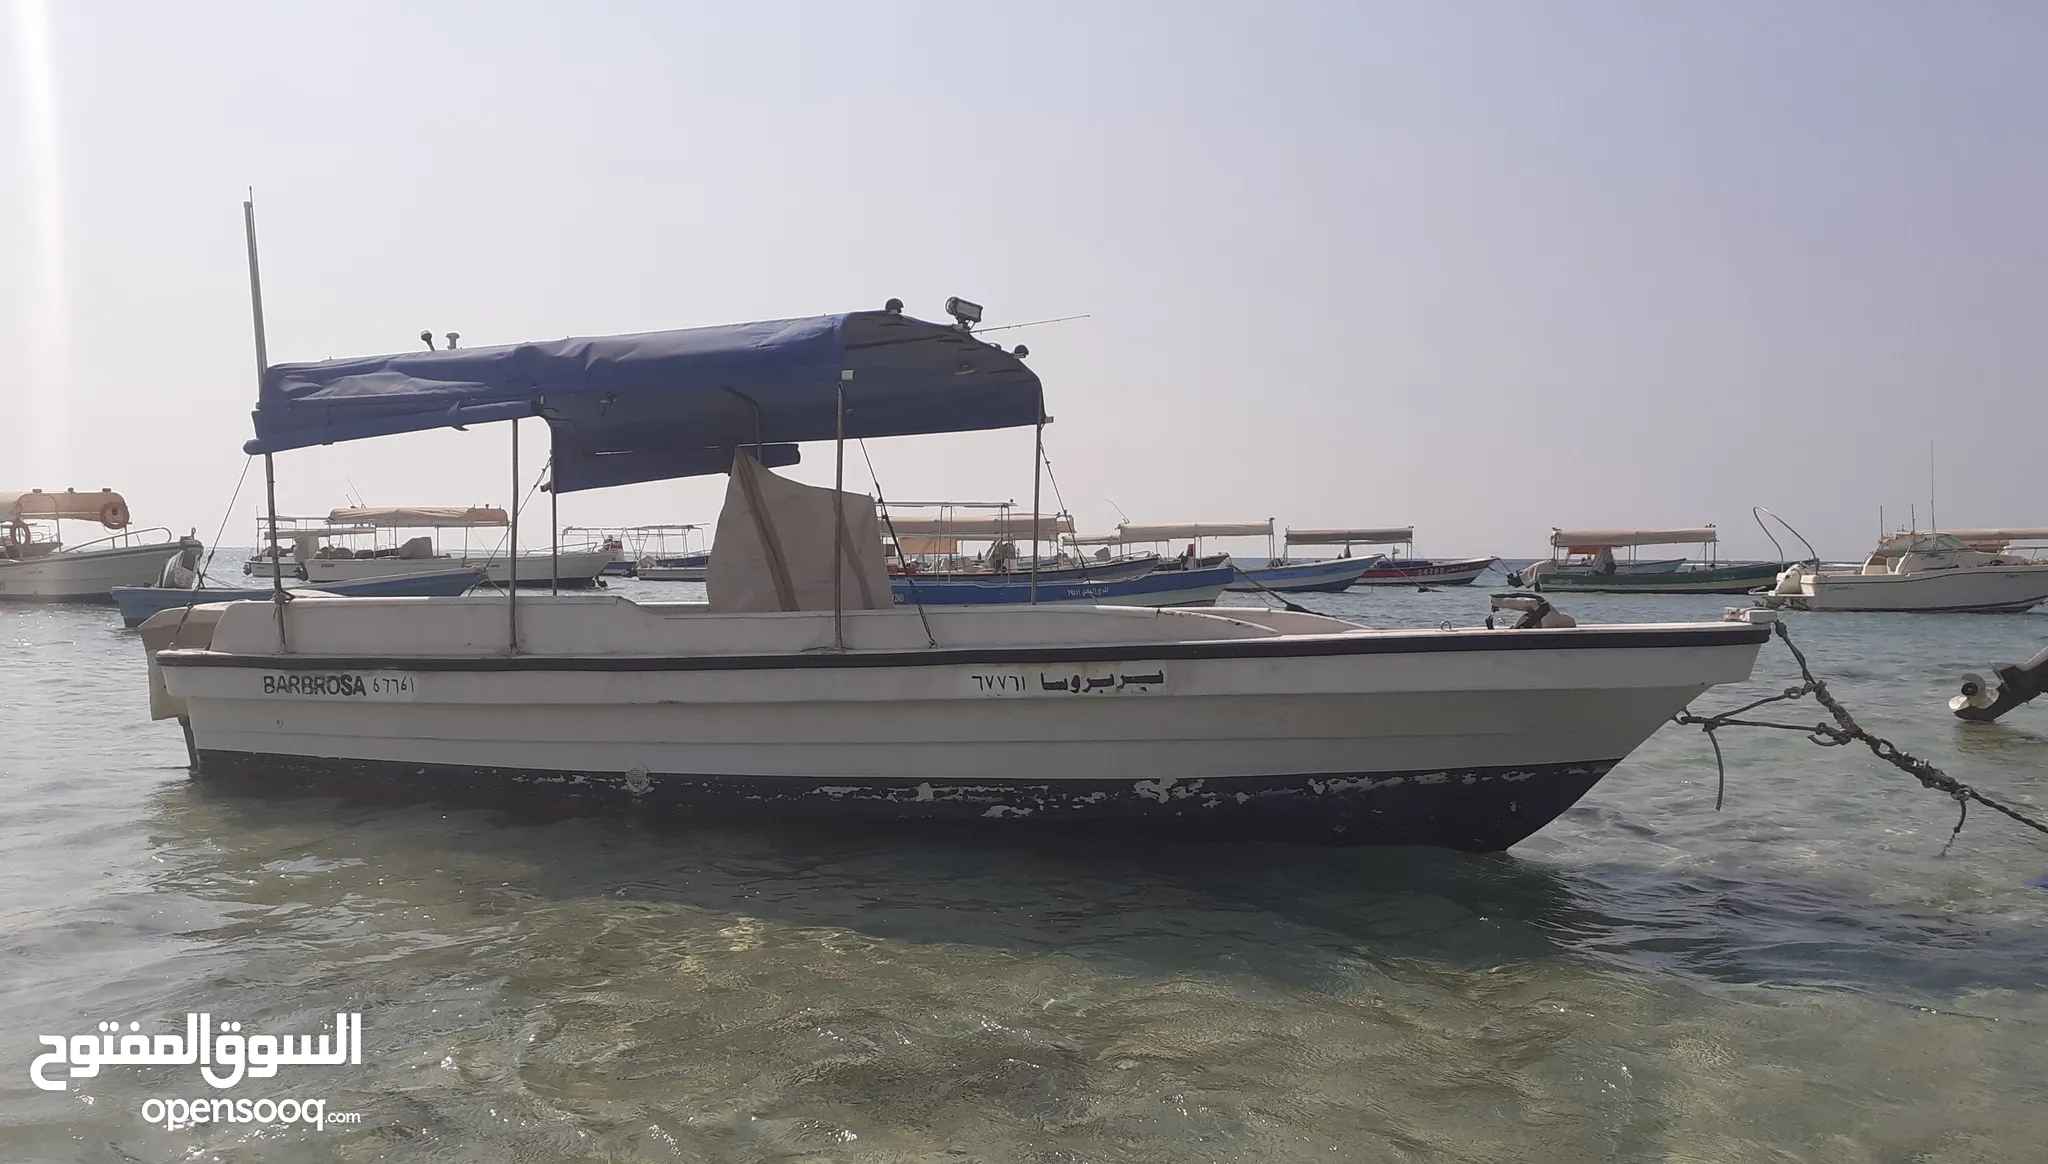 قوارب للبيع في جدة - قوارب صيد, طراد : أفضل الأسعار